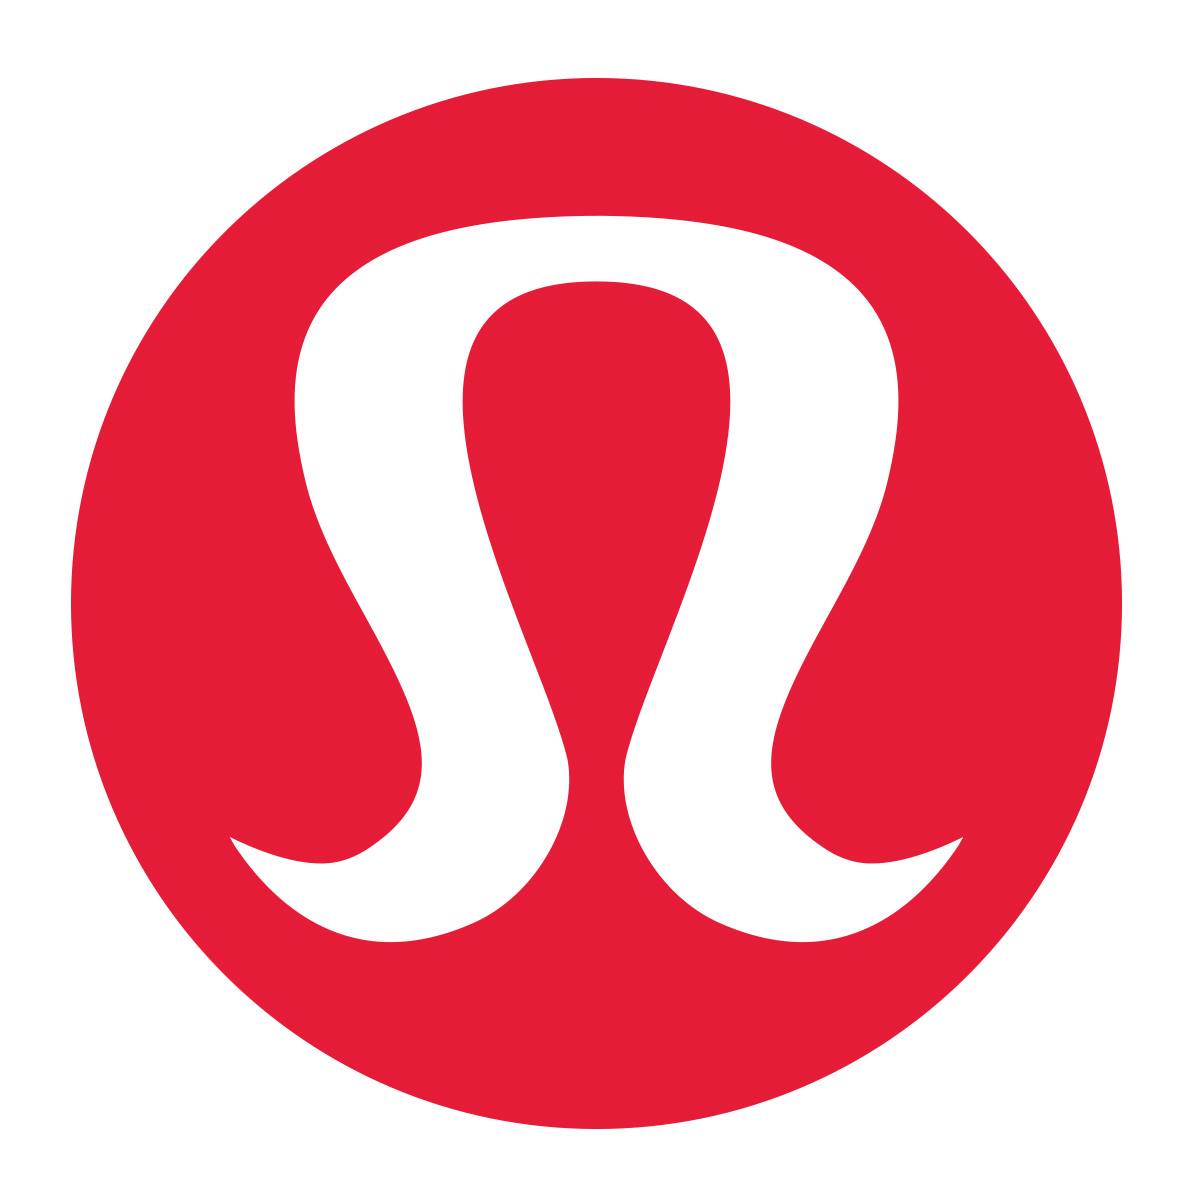 Company logo of lululemon